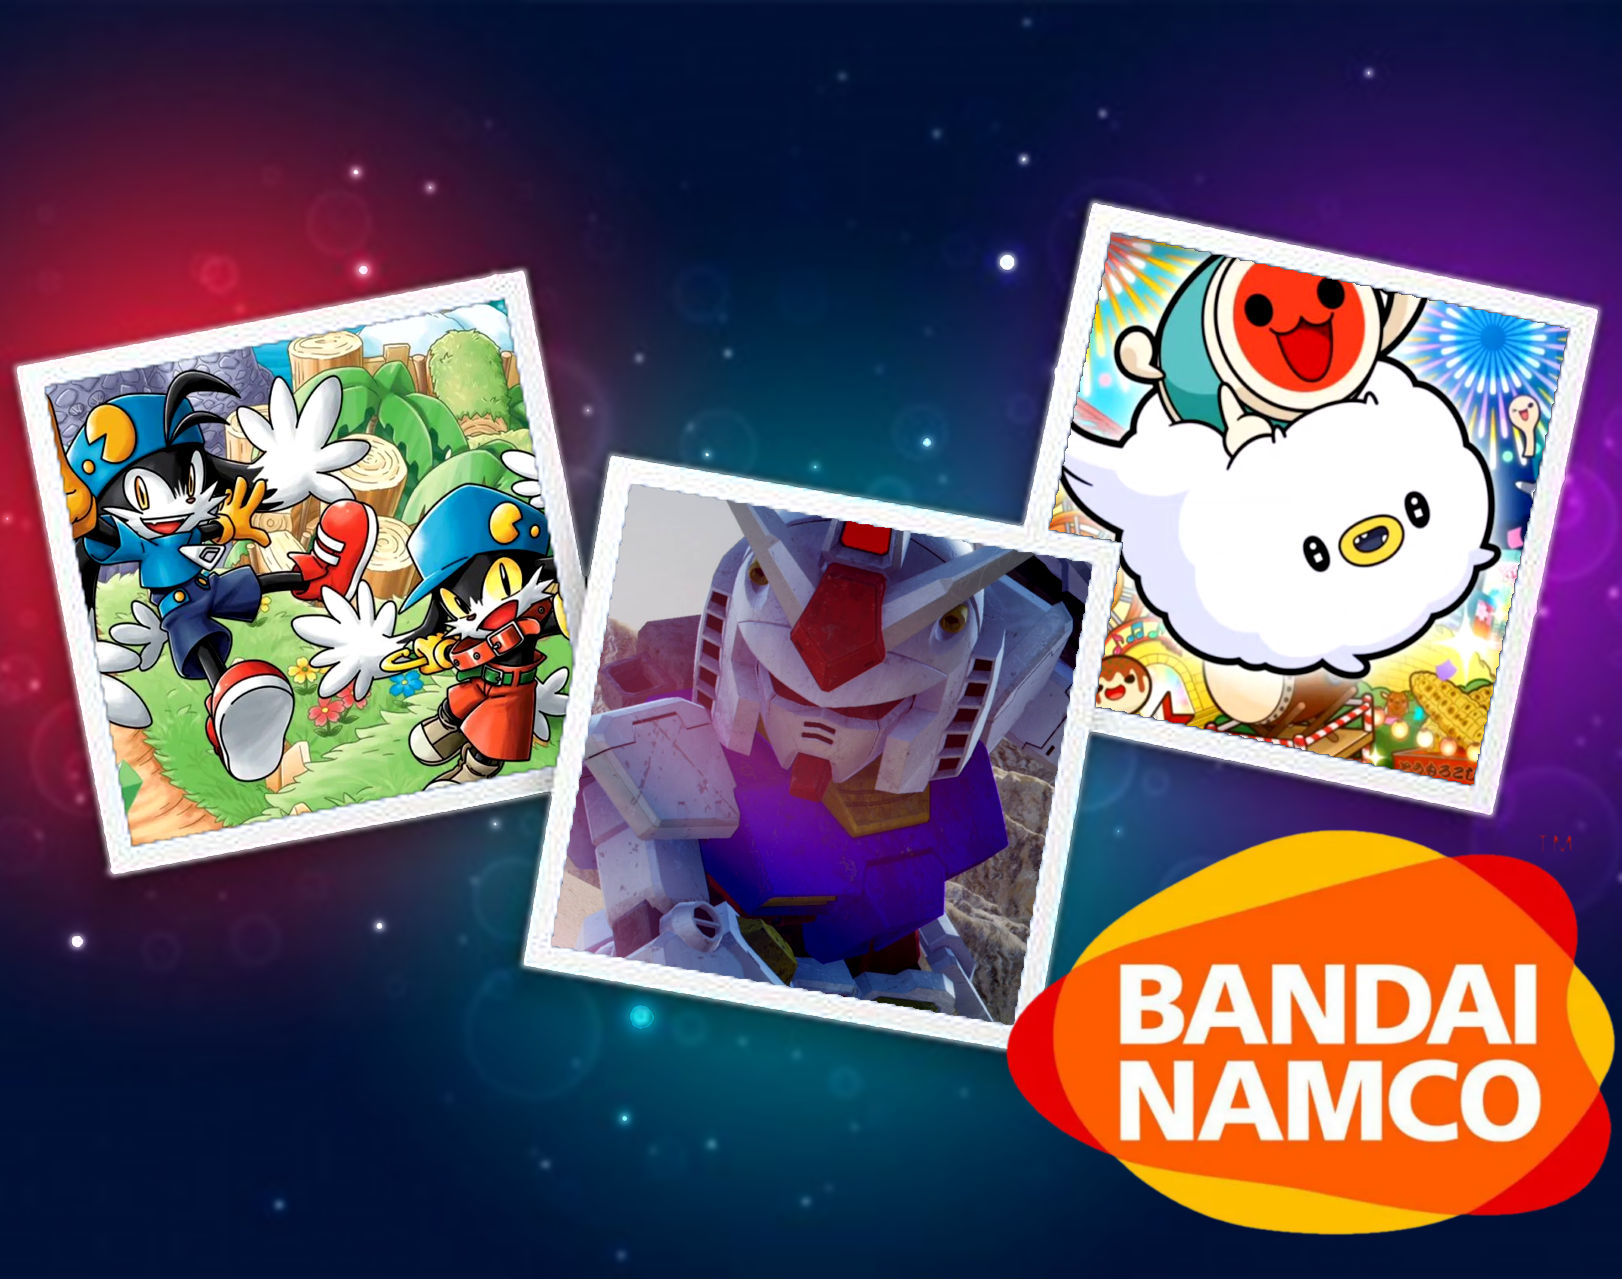 Tre nuovi titoli Bandai Namco per Nintendo Switch